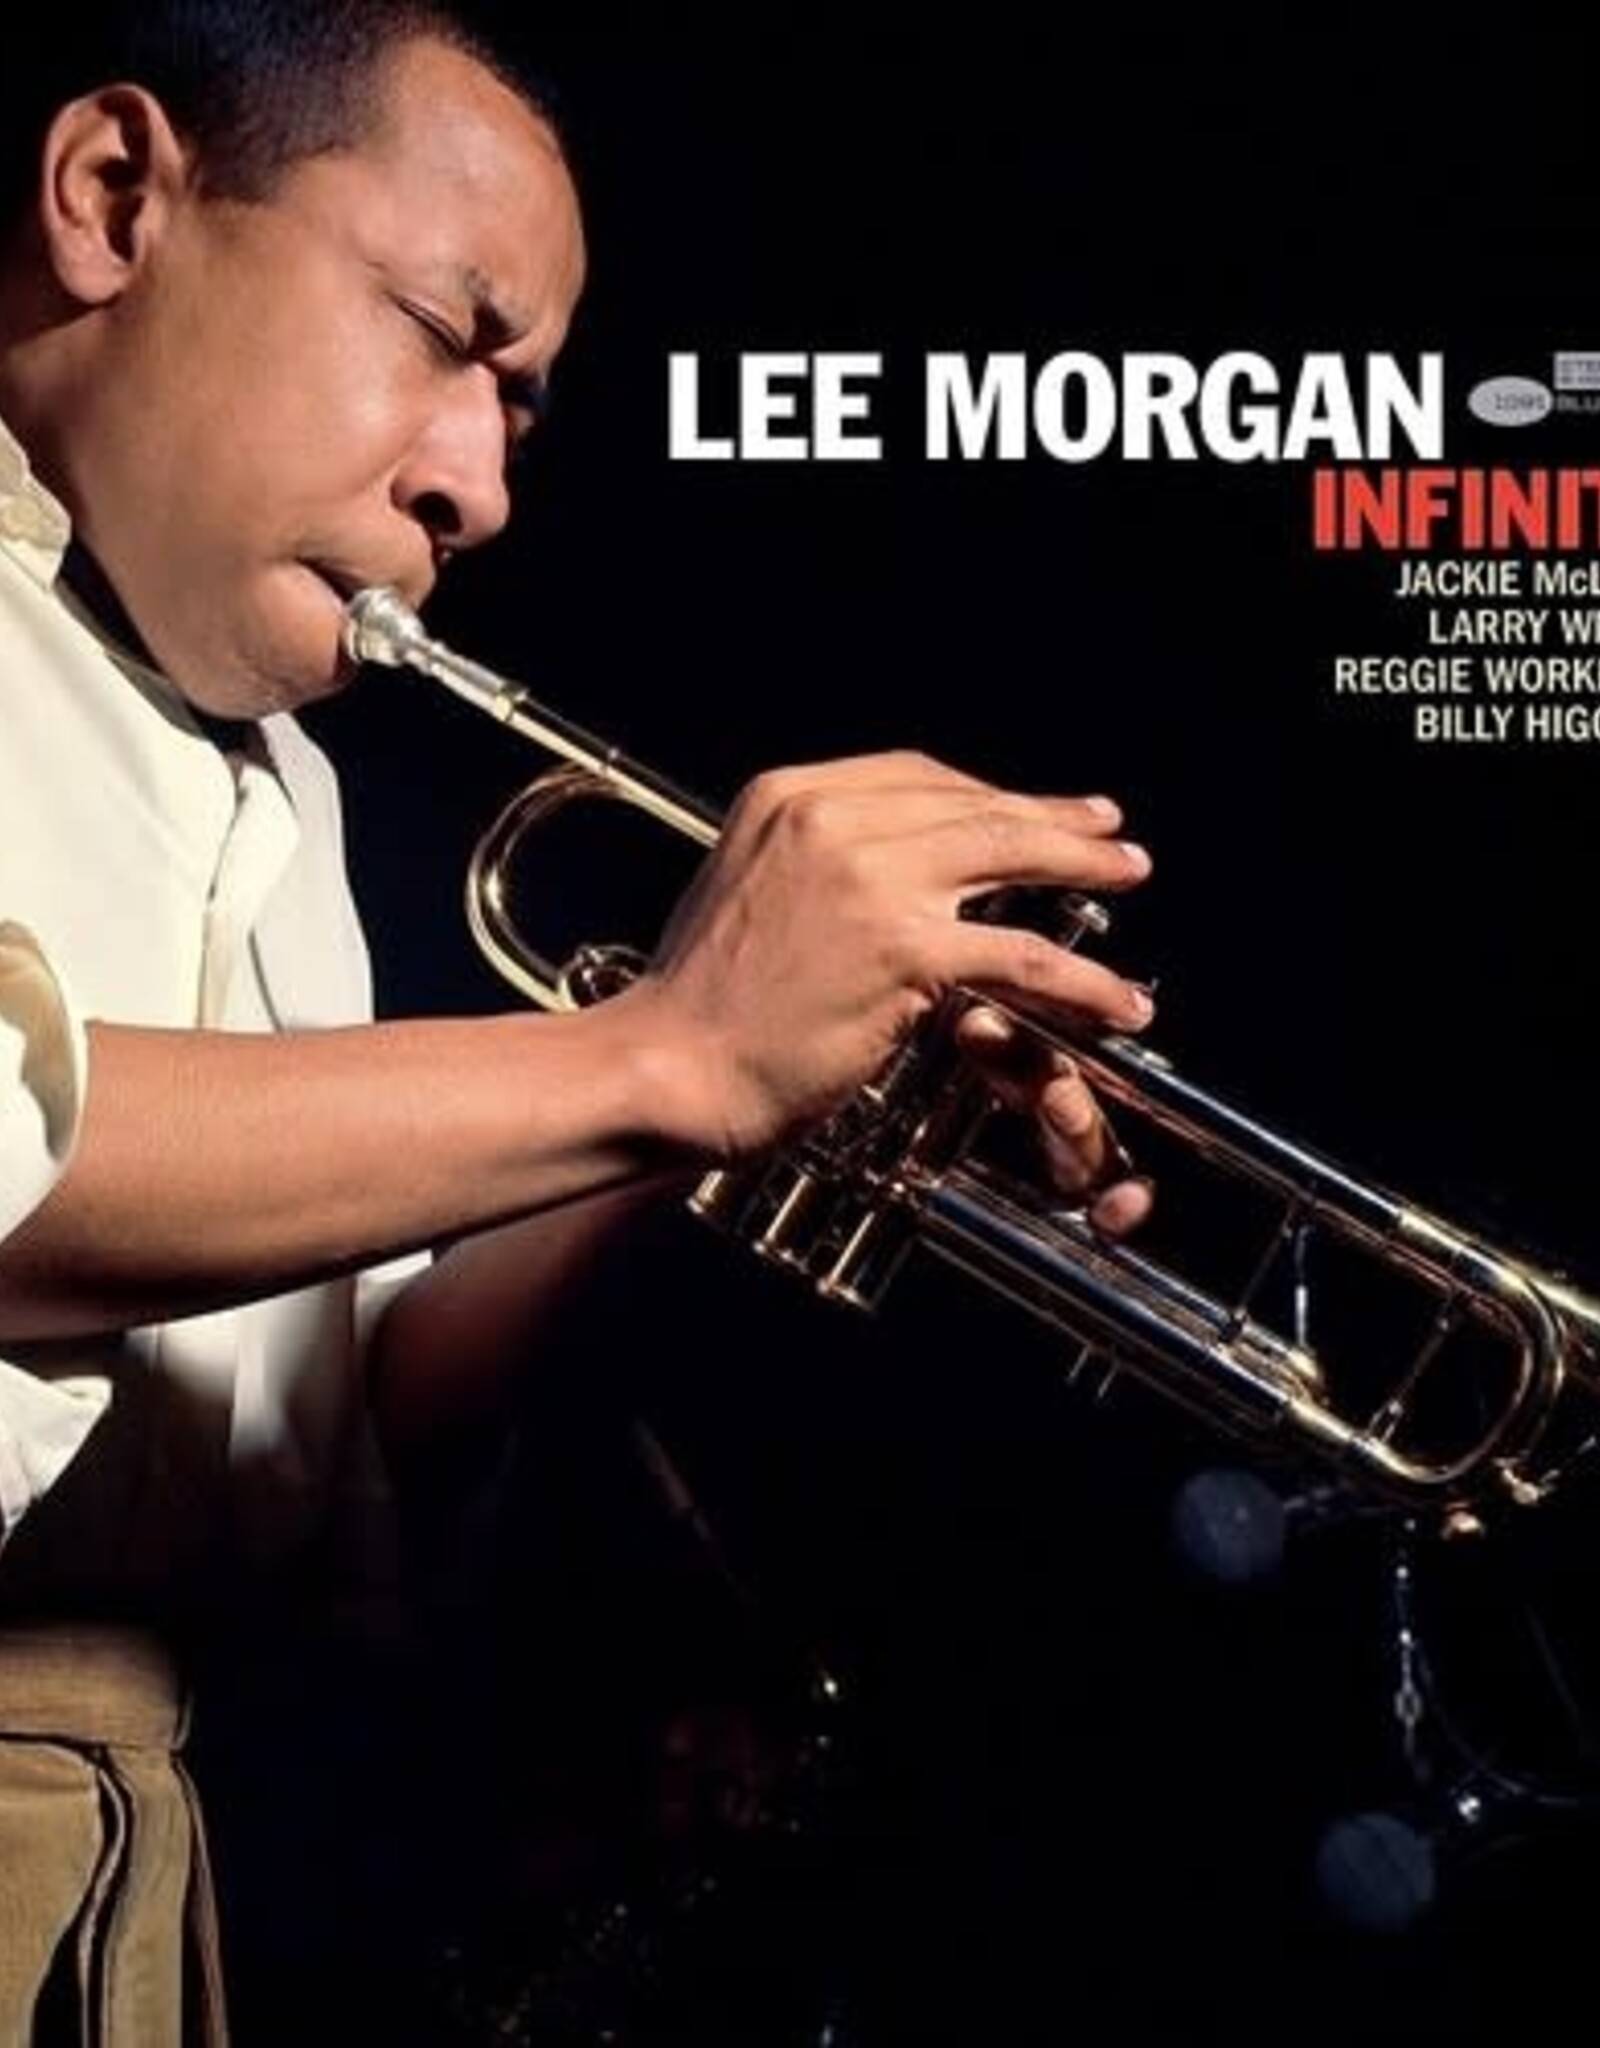 Lee Morgan - Infinity (Blue Note Tone Poet Series)